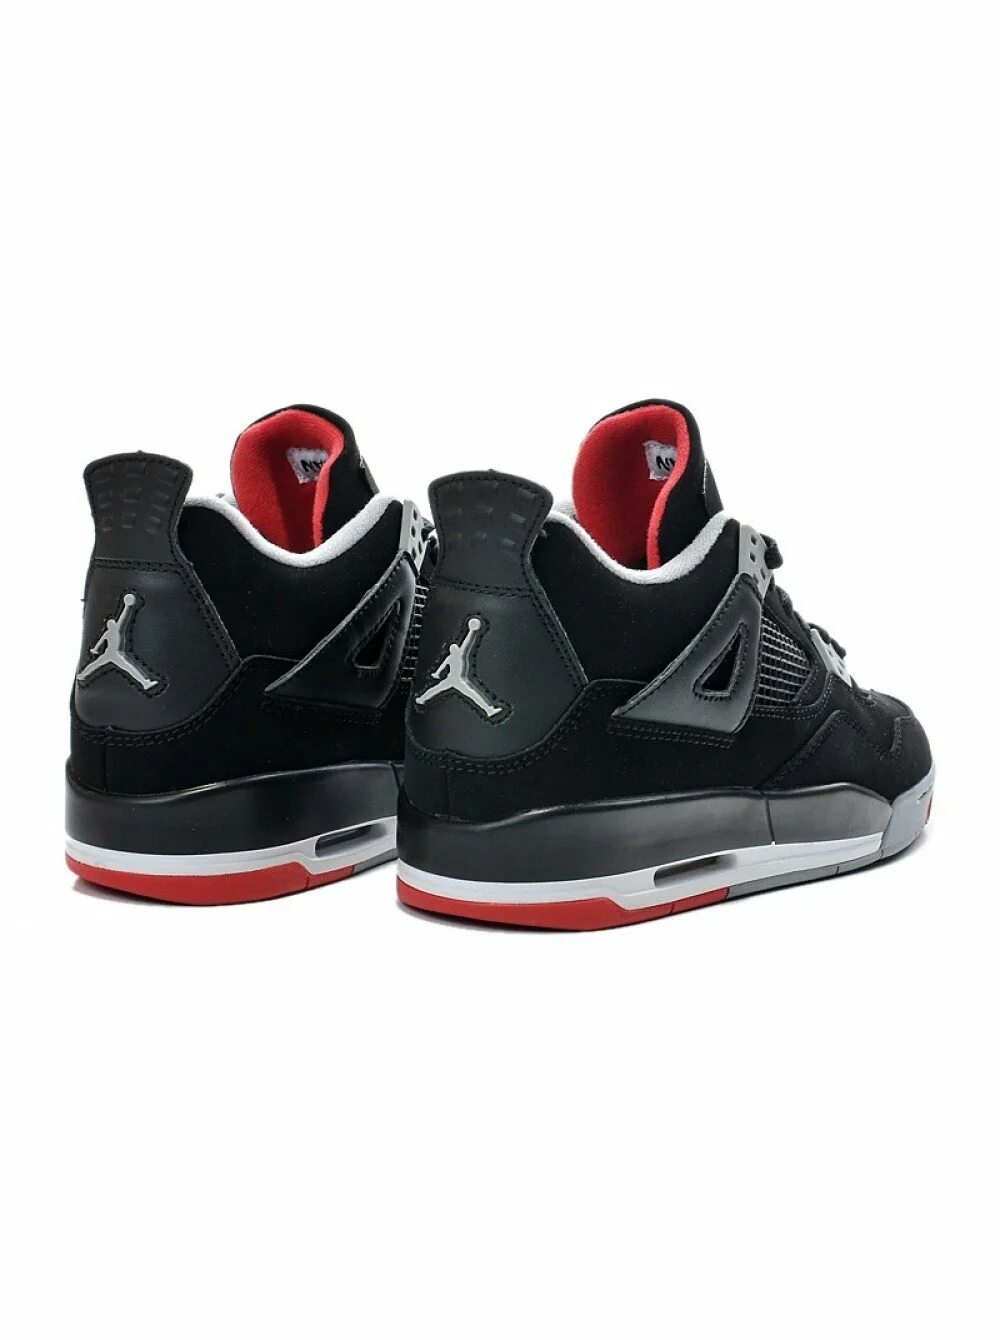 Nike Air Jordan 4. Nike Air Jordan 4 Retro. Nike Air Jordan 4 Retro Black. Nike Air Jordan 4 Retro черные.